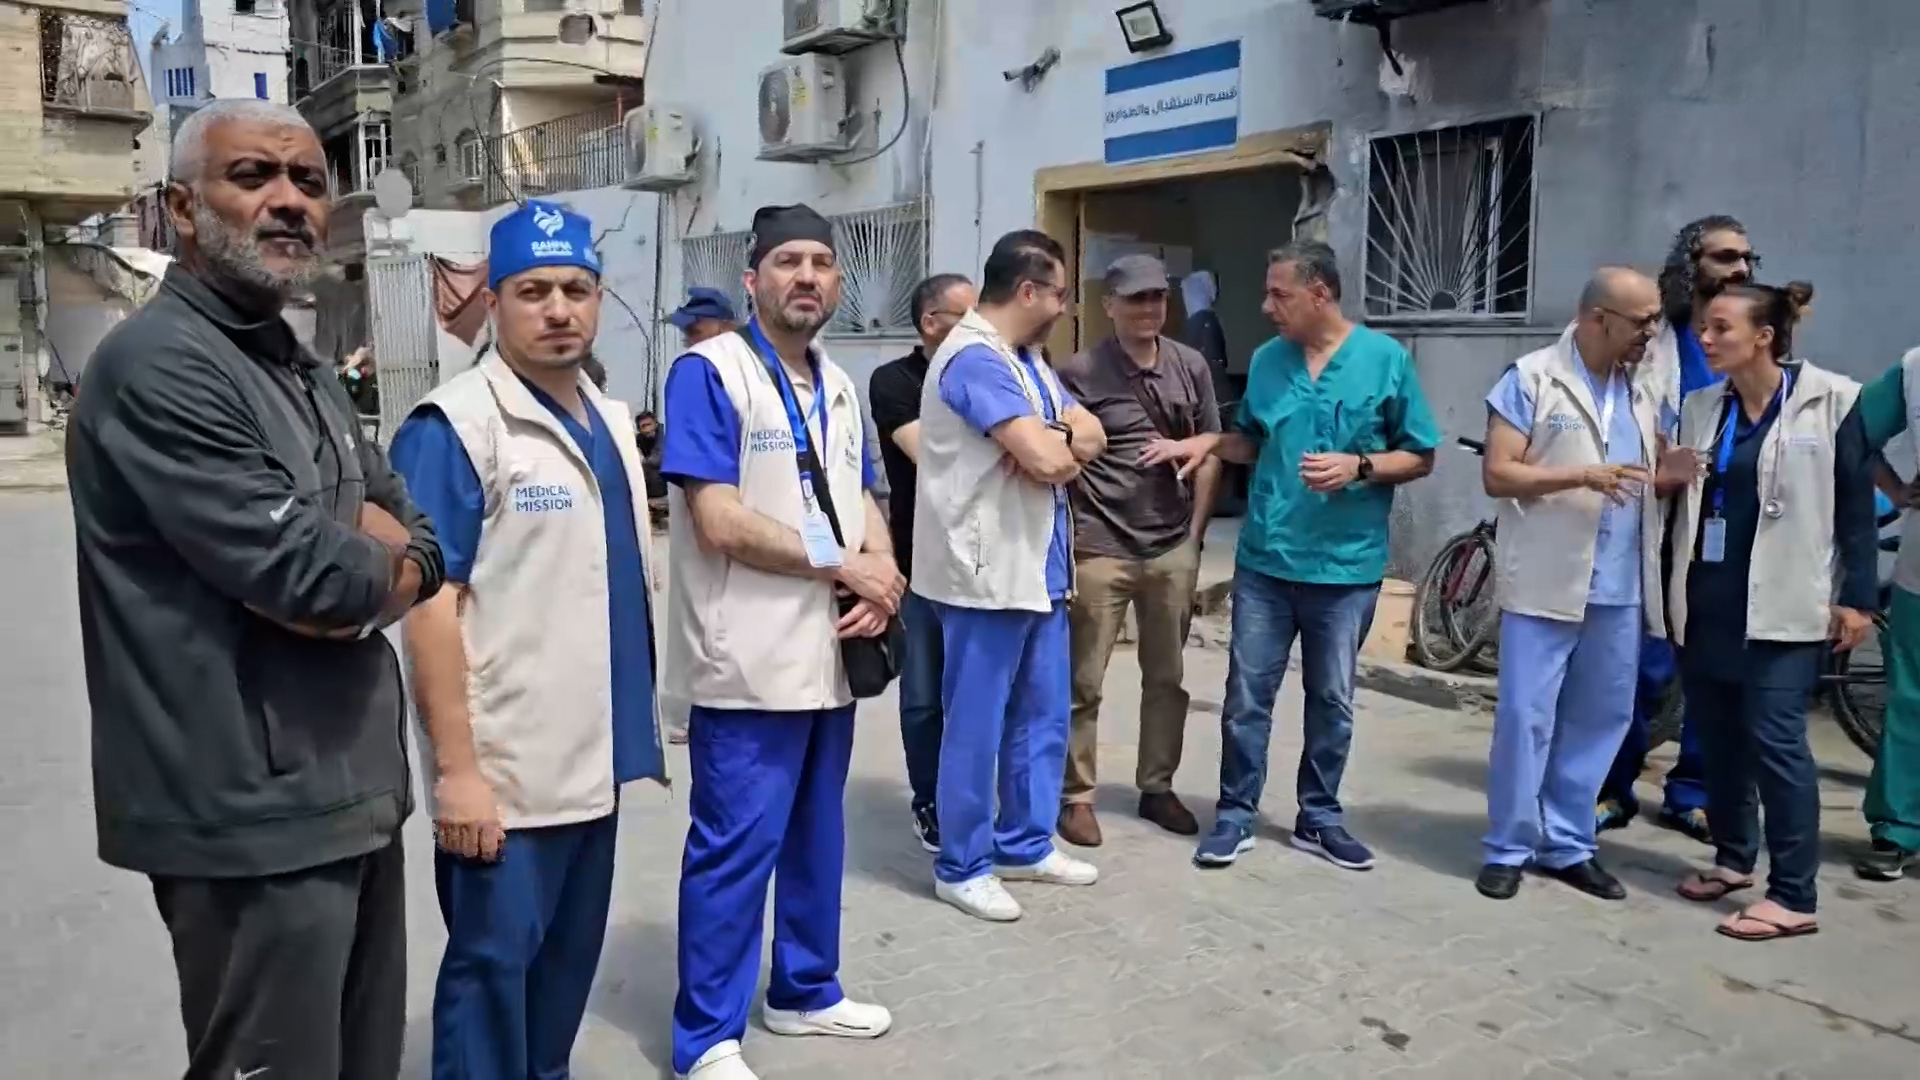 فريق طبي متعدد الاختصاصات يصل إلى شمال قطاع غزة | التقارير الإخبارية – البوكس نيوز